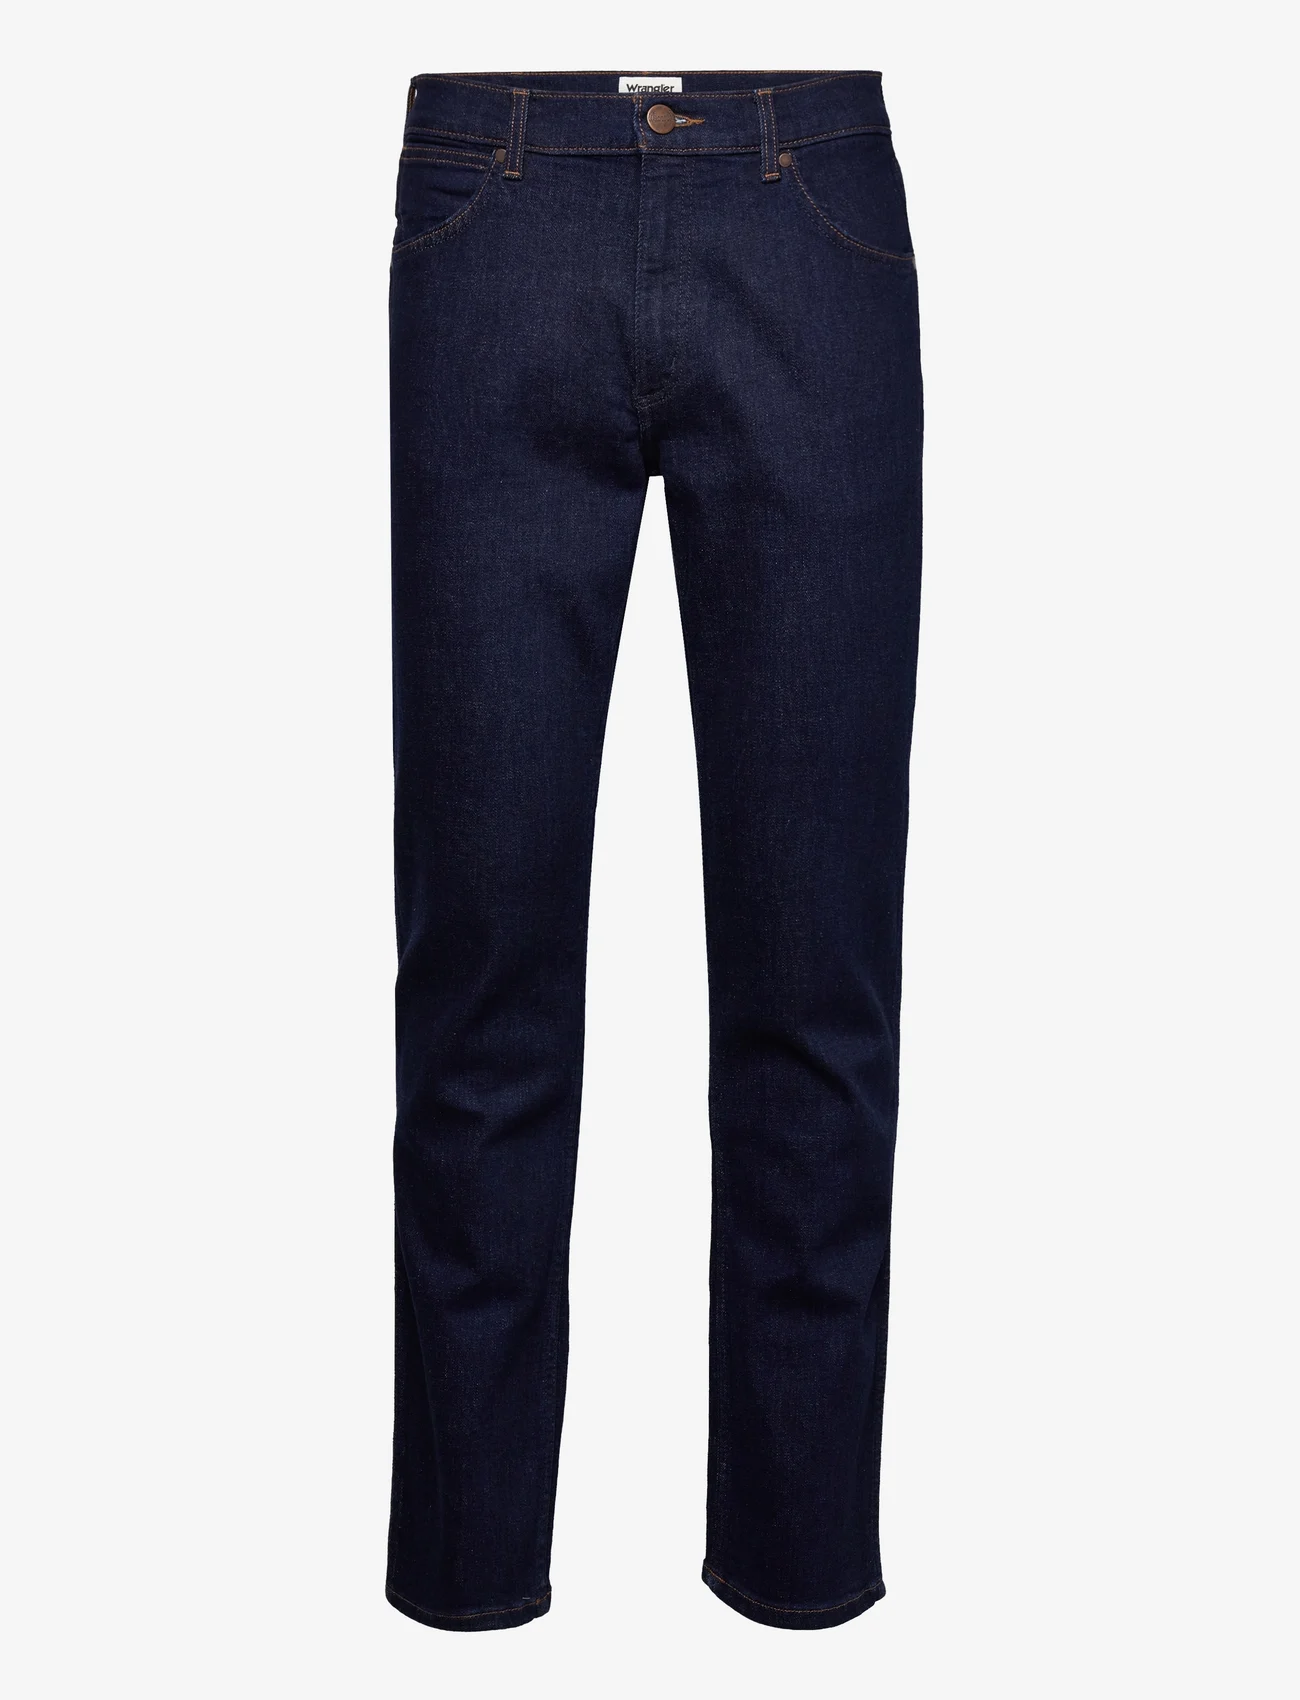 Wrangler - GREENSBORO - regular jeans - day drifter - 0